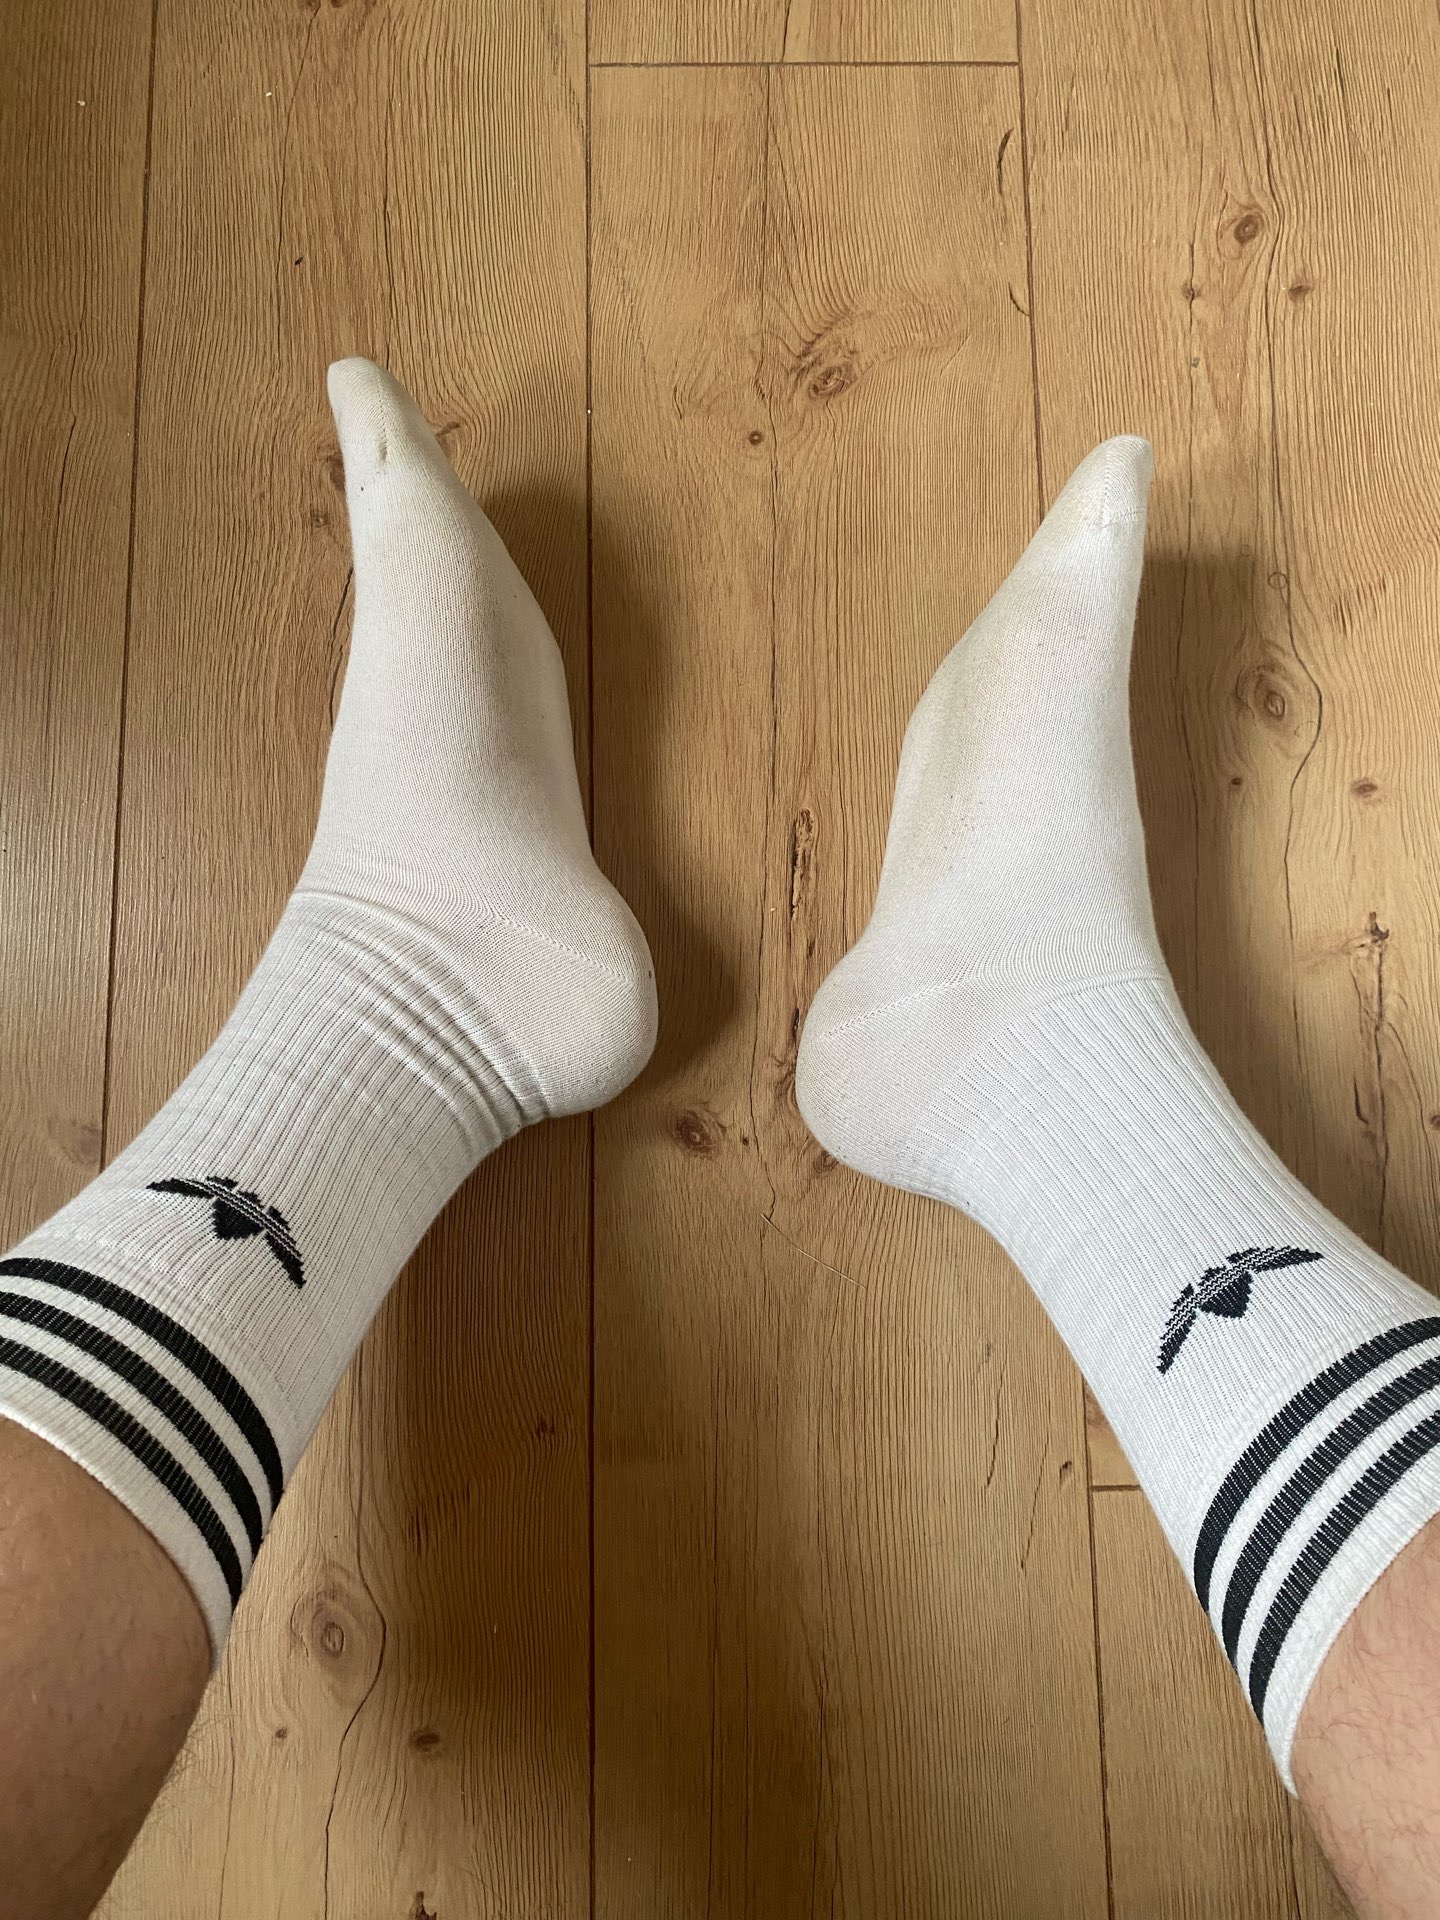 Adidas Socken Getragen Used!